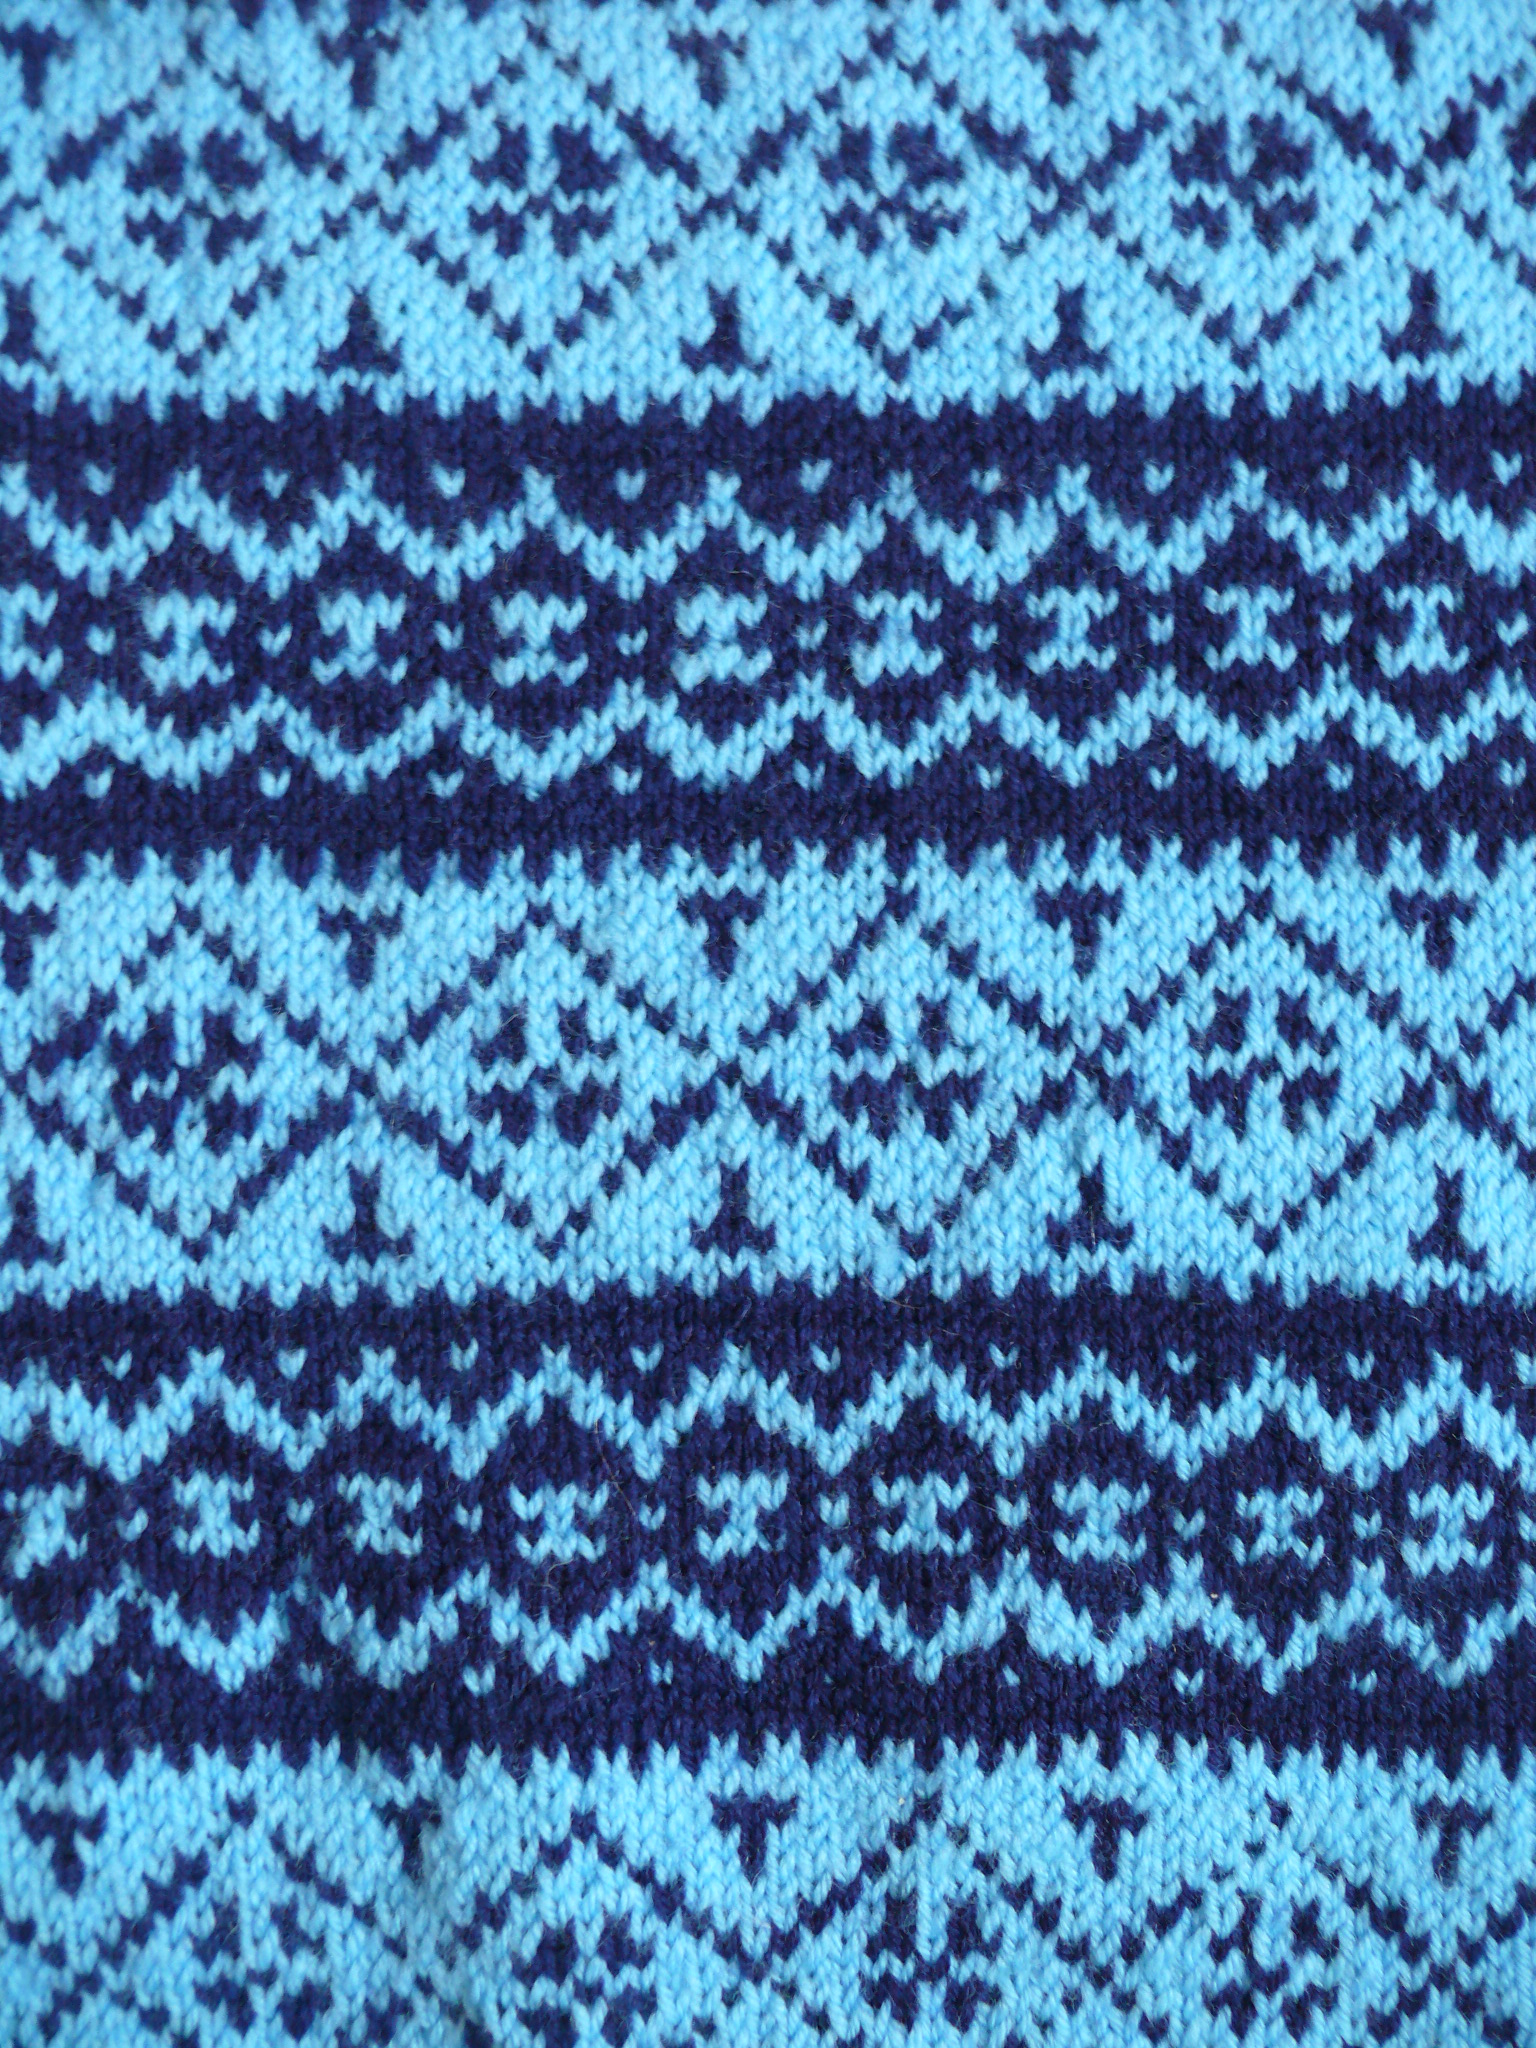 Norwegian Patterns For Knitting Hundreds Free Norwegian Knitting Chartspatterns On Fbs Koftegruppa